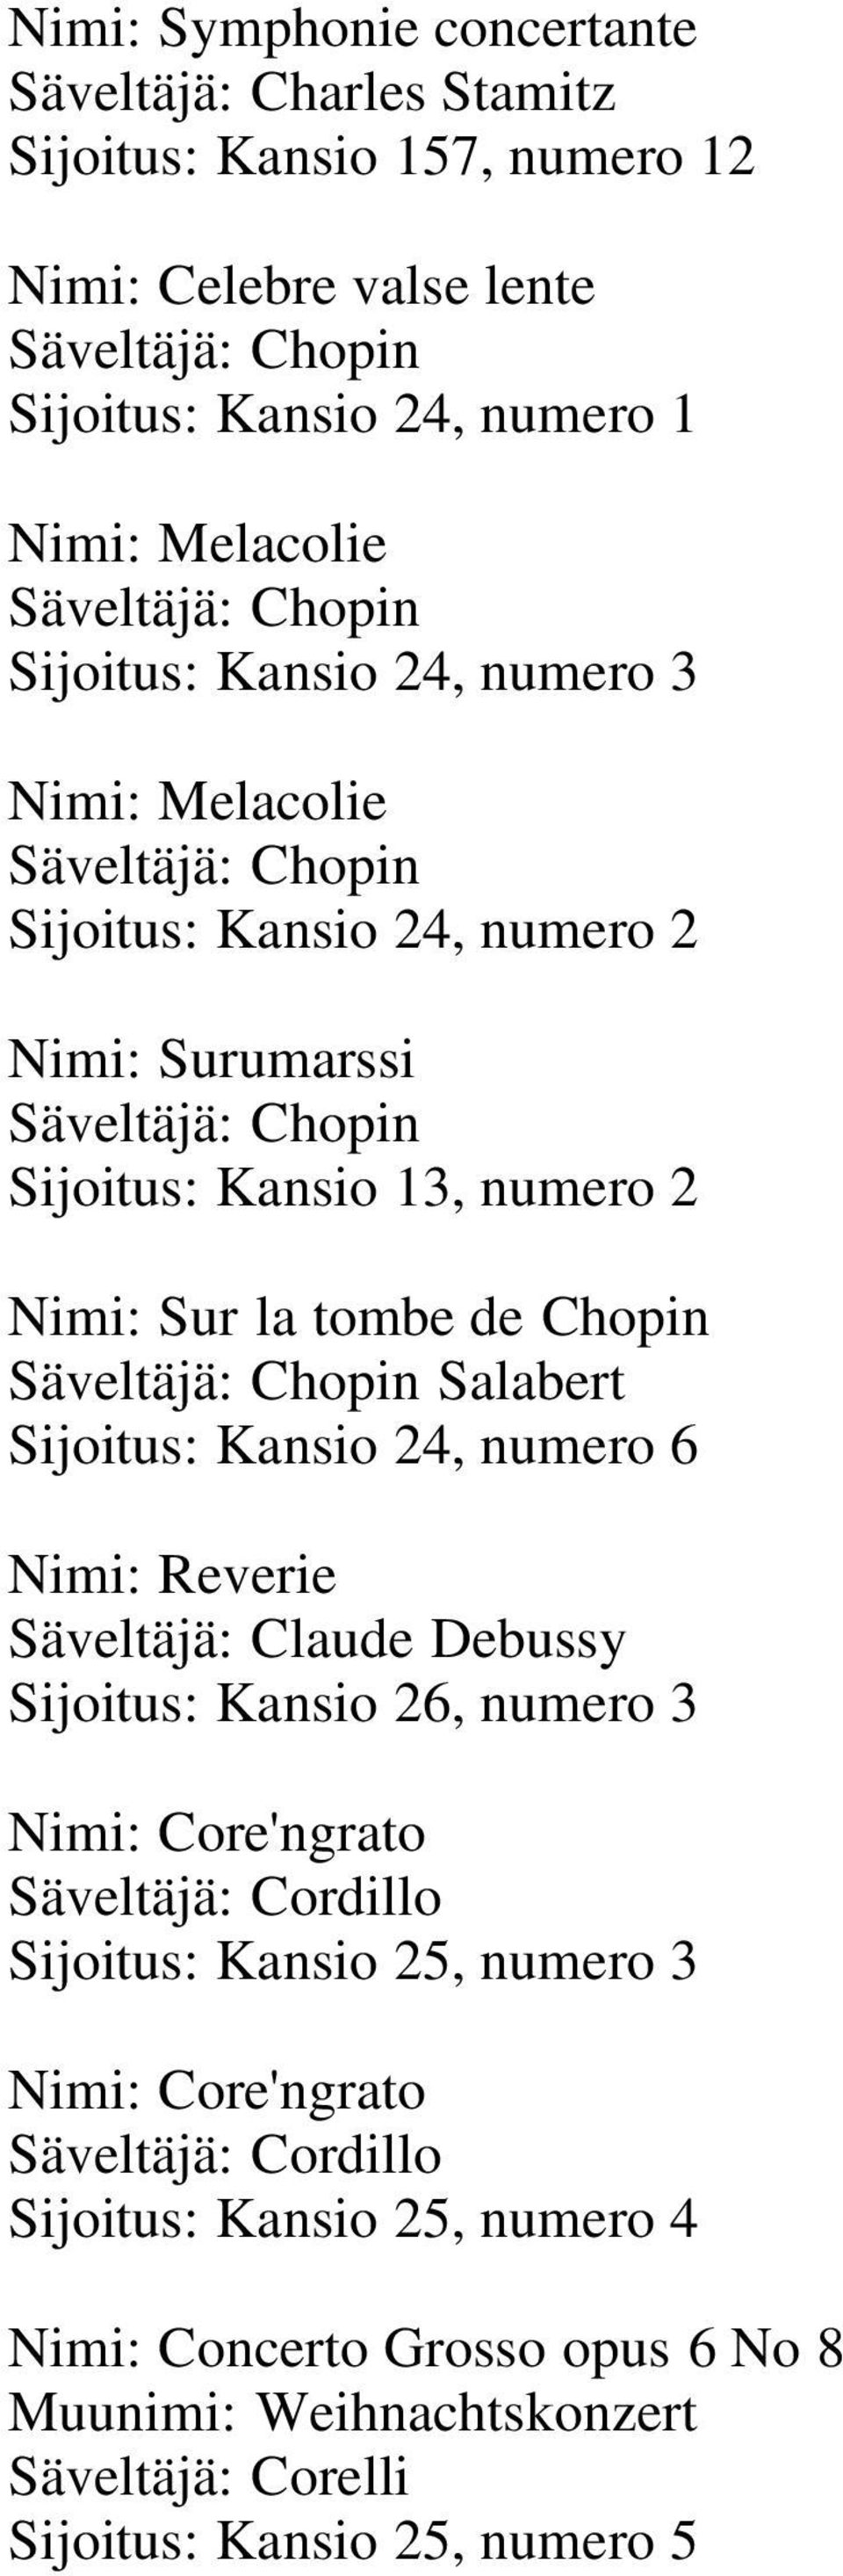 Chopin Säveltäjä: Chopin Salabert Sijoitus: Kansio 24, numero 6 Nimi: Reverie Säveltäjä: Claude Debussy Sijoitus: Kansio 26, numero 3 Nimi: Core'ngrato Säveltäjä: Cordillo Sijoitus: Kansio